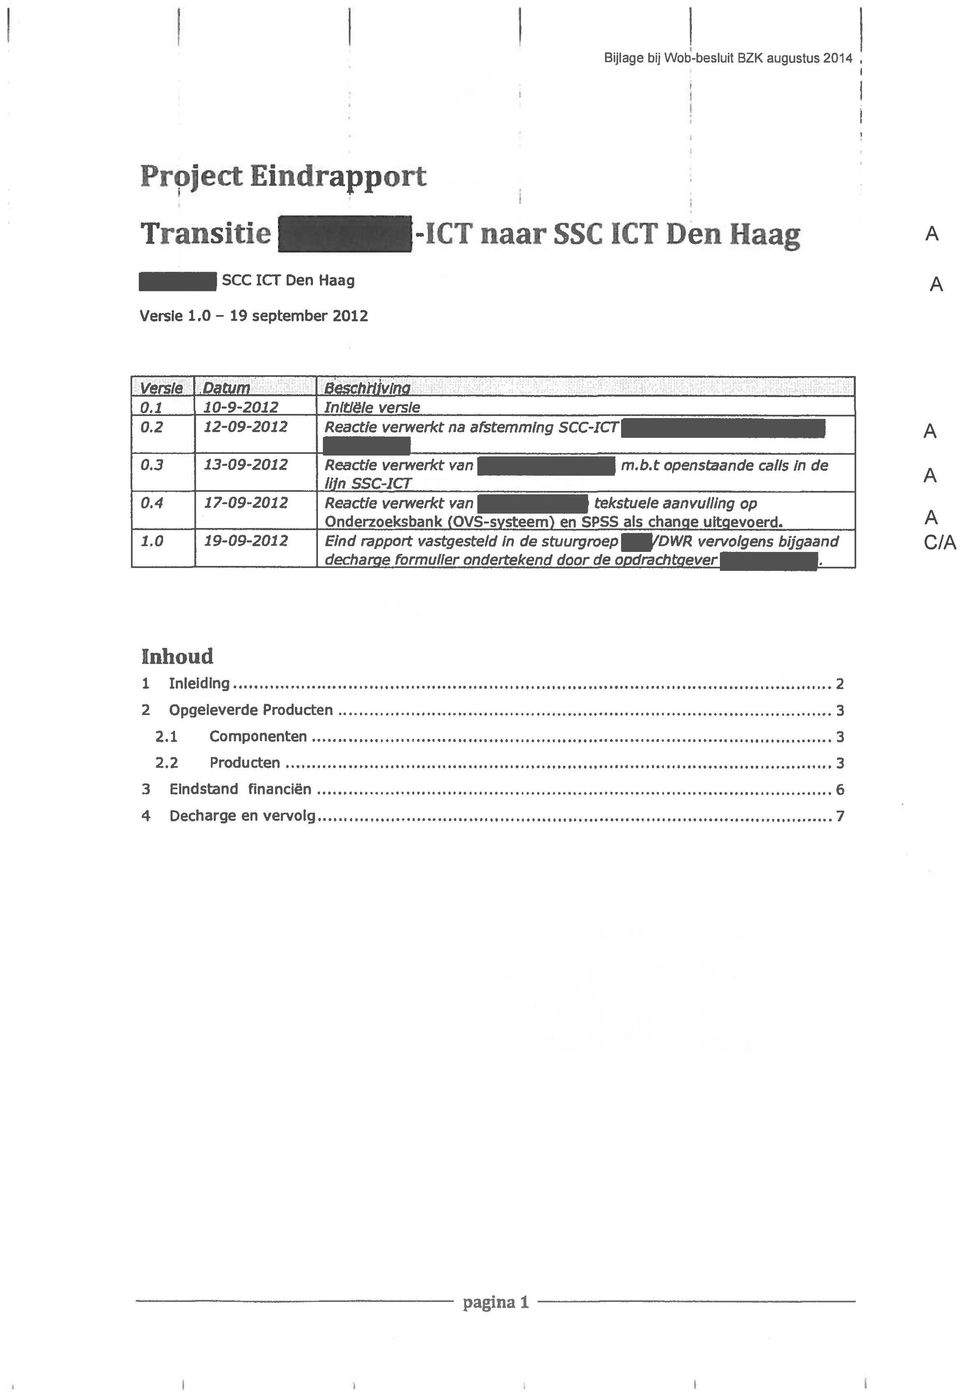 4 17-09-2012 Reactie verwerkt van tekstuele aanvulling op Onderzoeksbank (OVS-systeem) en SPSS als change uitgevoerd. 1.0 19-09-2012 Eind rapport vastgesteld in de stuurgroep /DWR